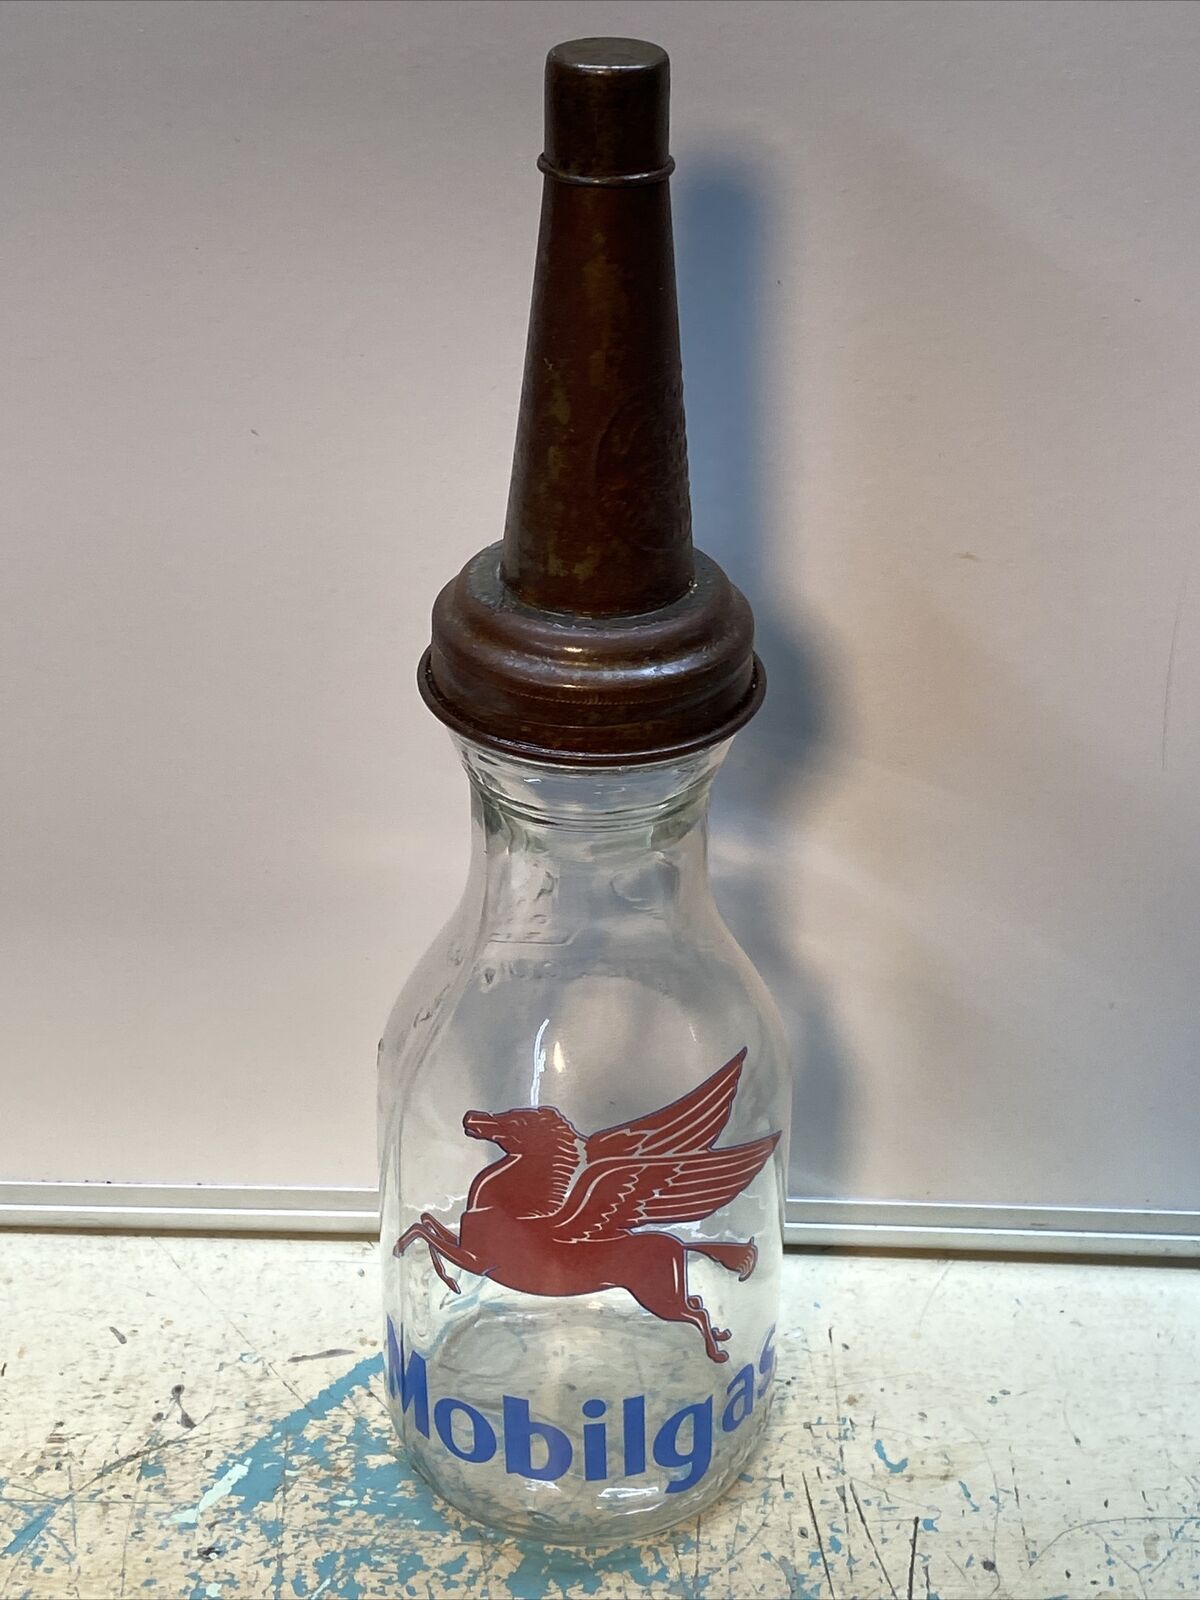 Mobilgas Pegasus Motor Oil Bottle Spout Cap Glass Vintage Style Gas Station